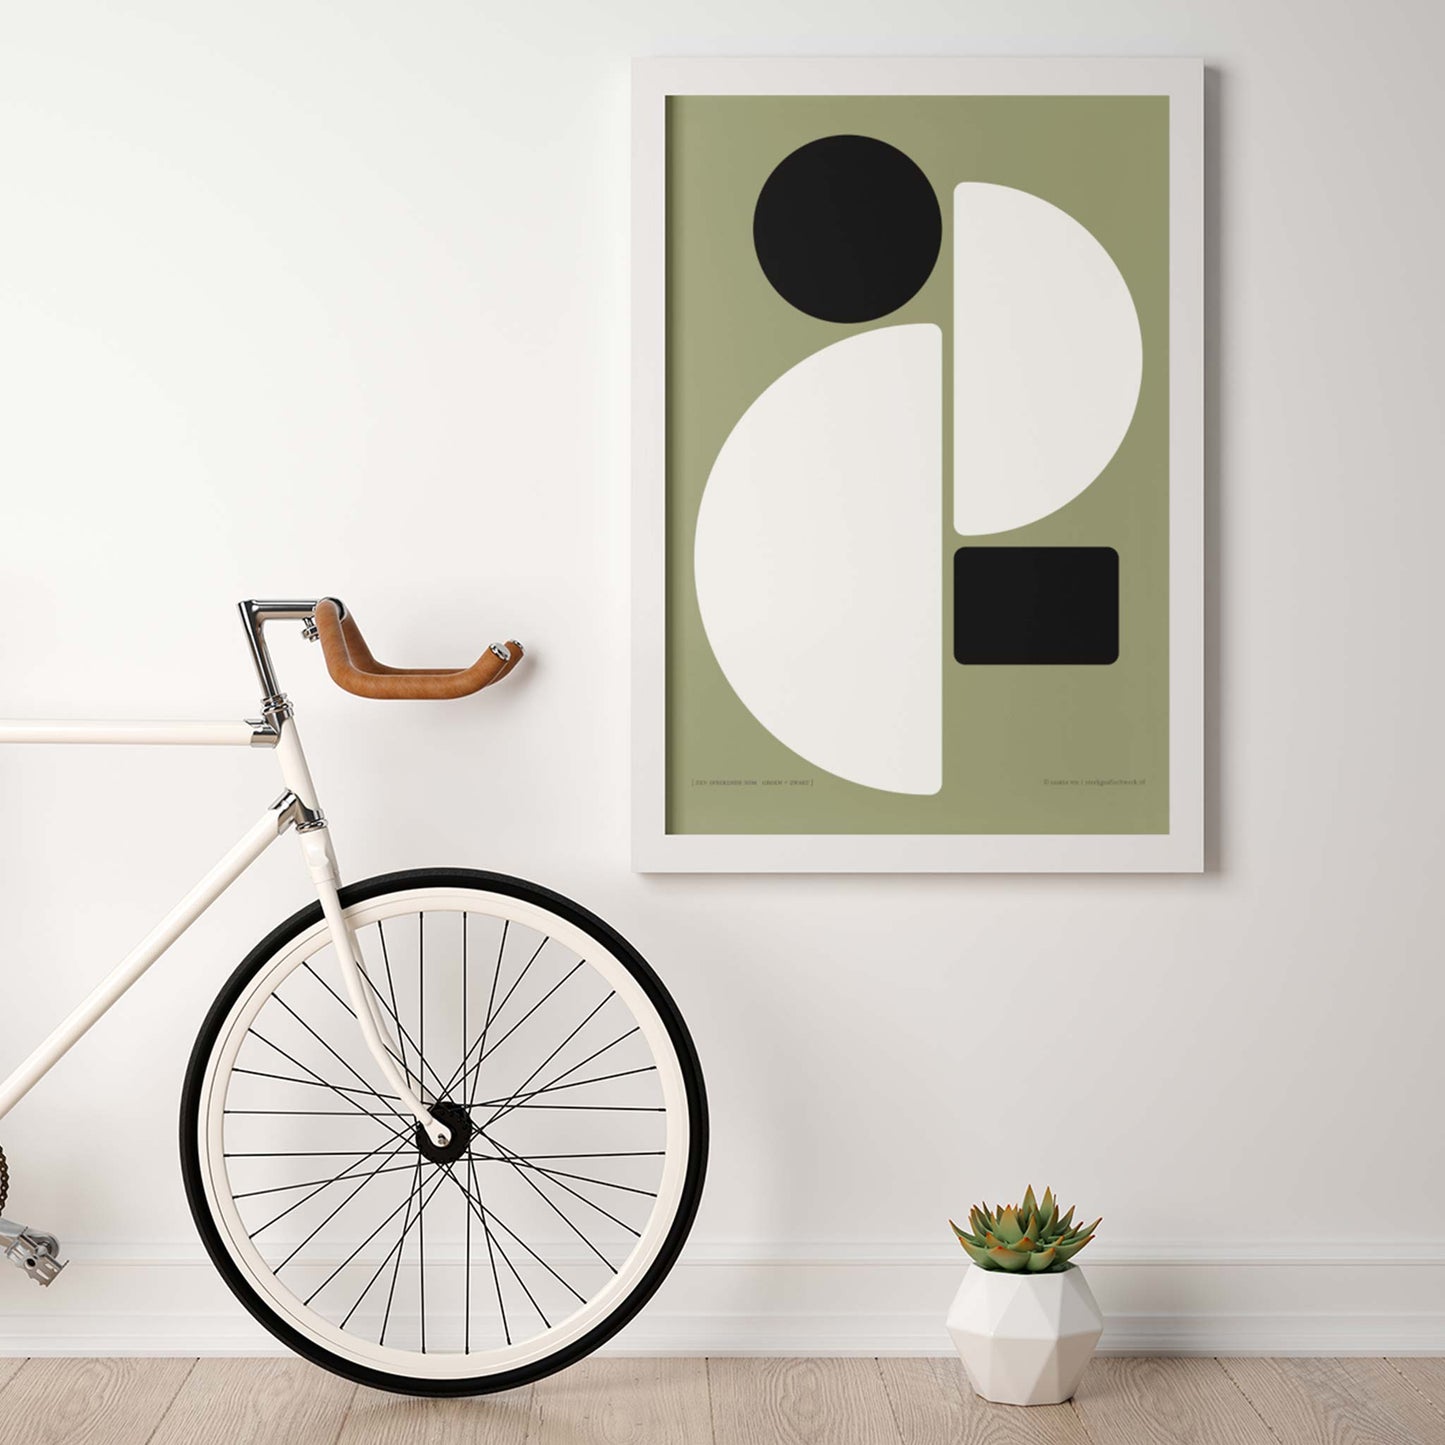 Productafbeelding poster "een sprekende som groen+zwart" 2de impressie hangend aan een wand in een interieur